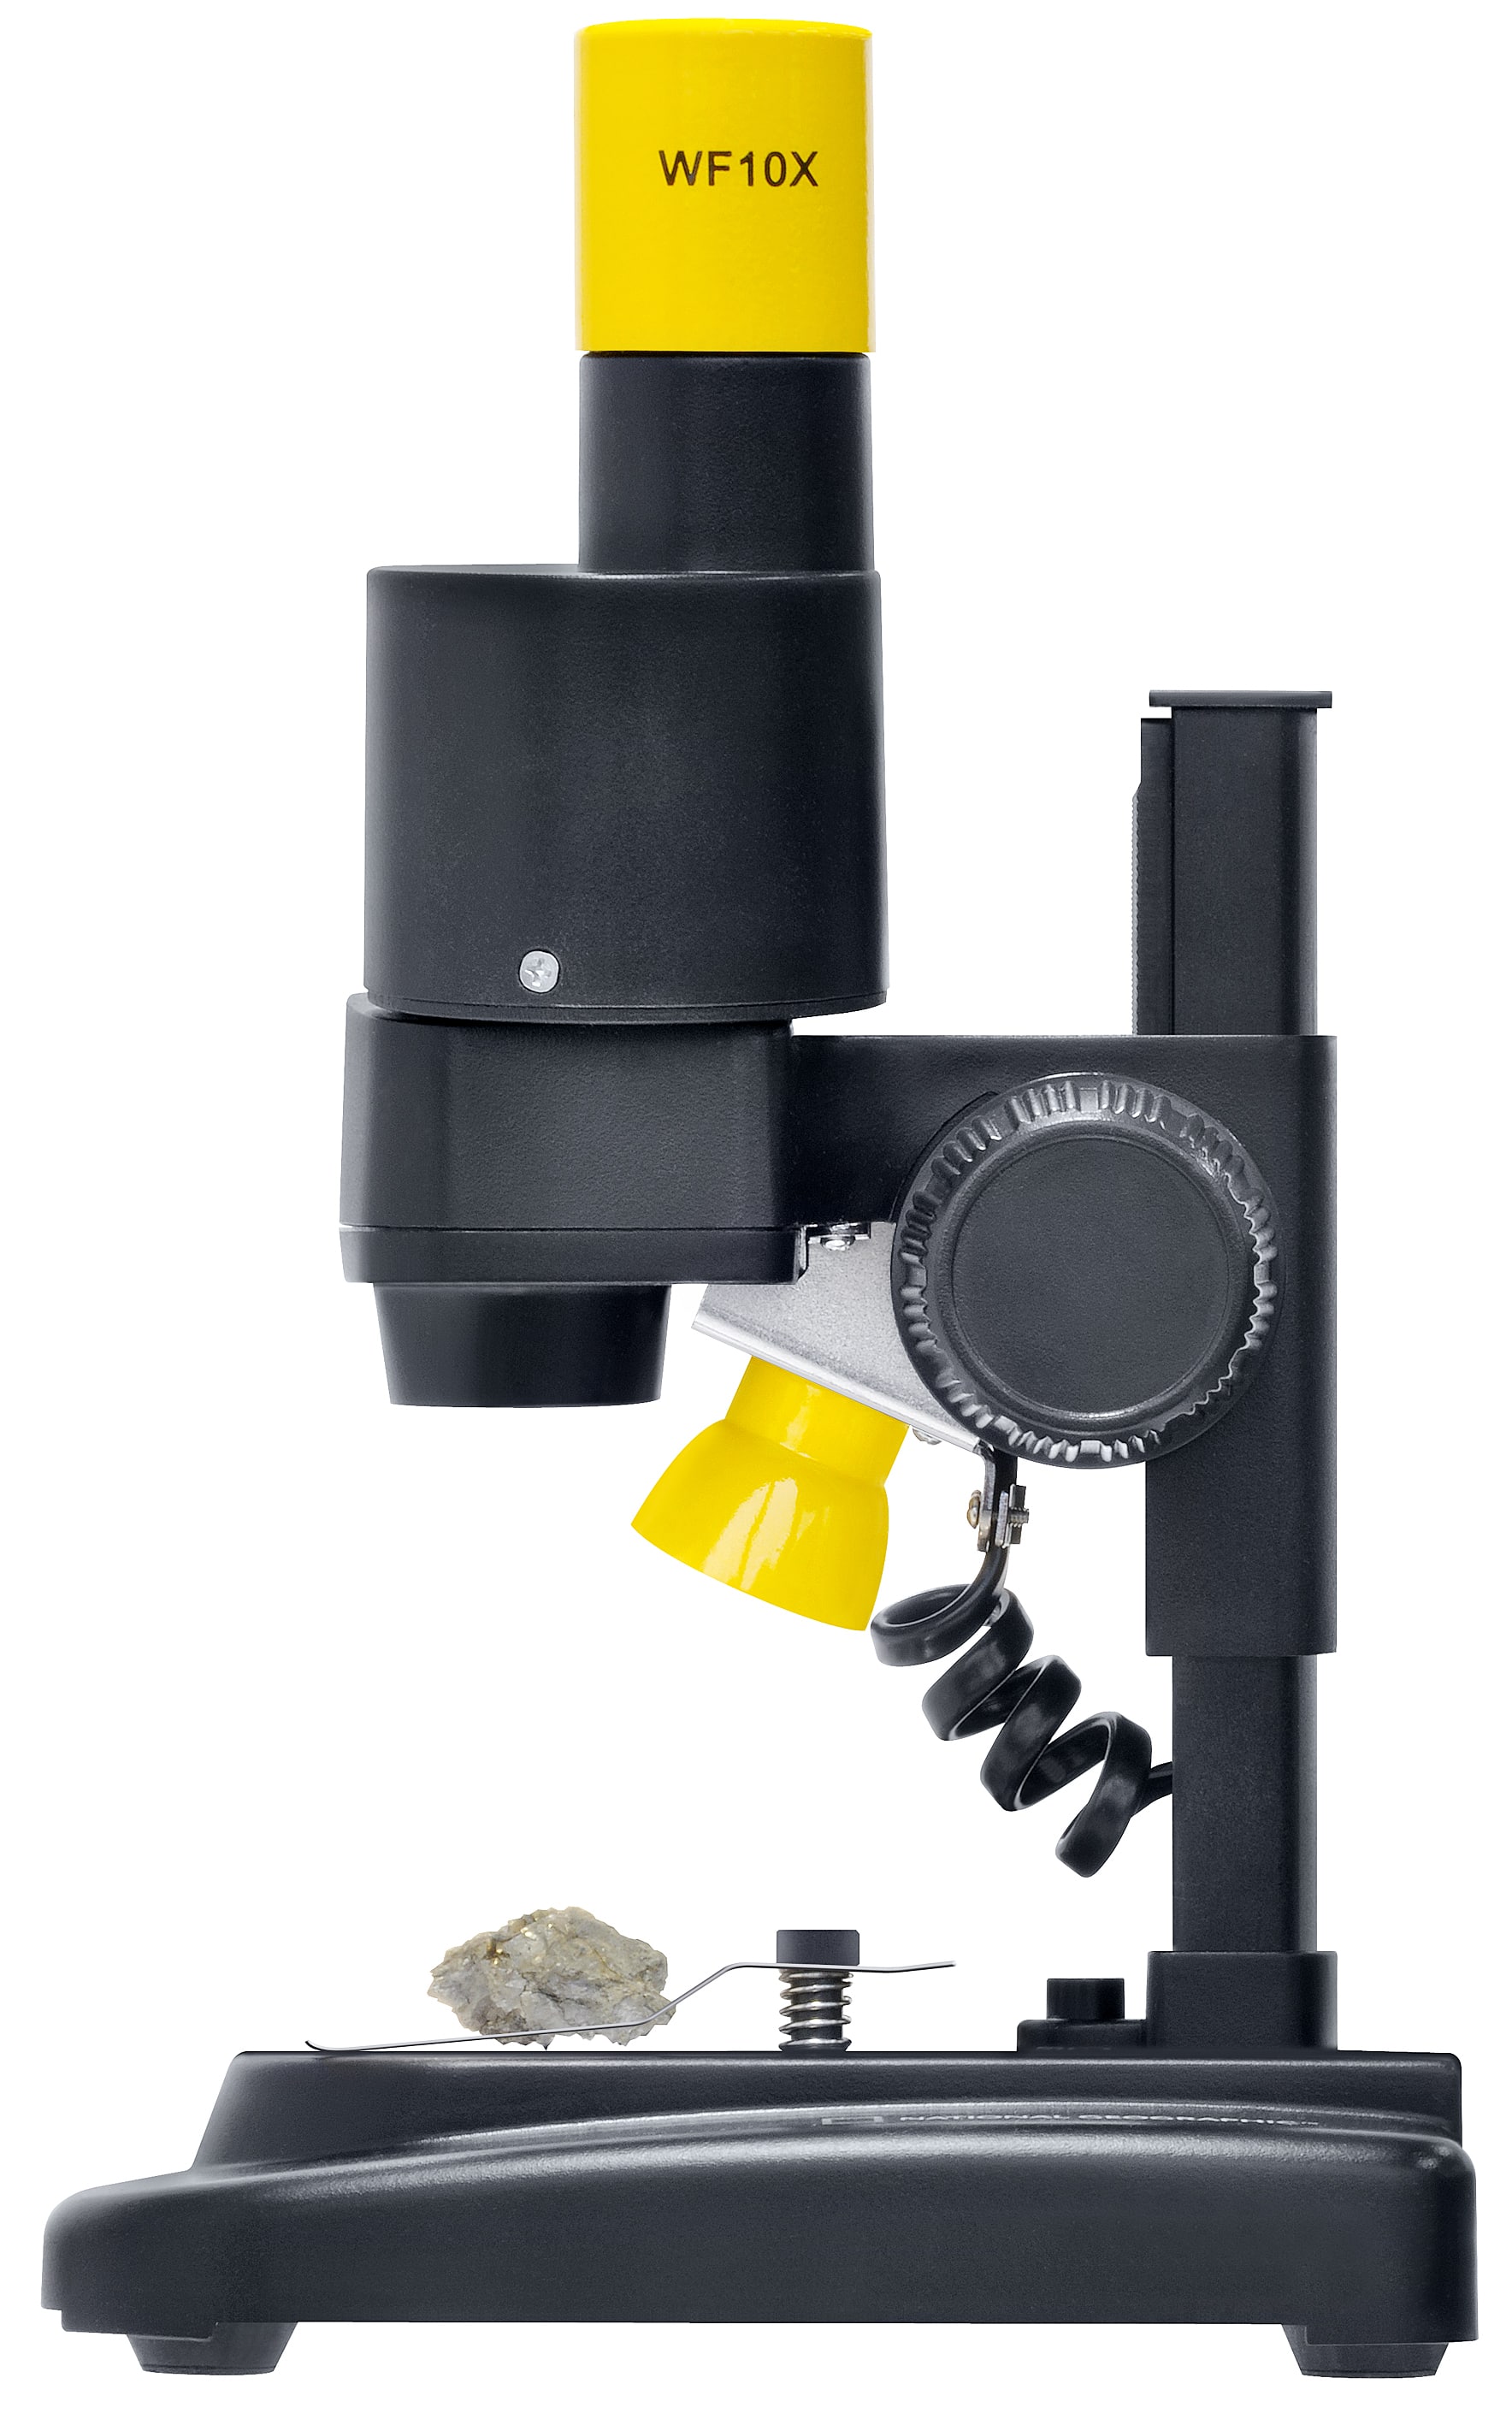   Scopri il fascino delle piccole cose grazie al microscopio stereoscopico alimentato a batteria con ingrandimento 20x e illuminazione LED a luce incidente.  